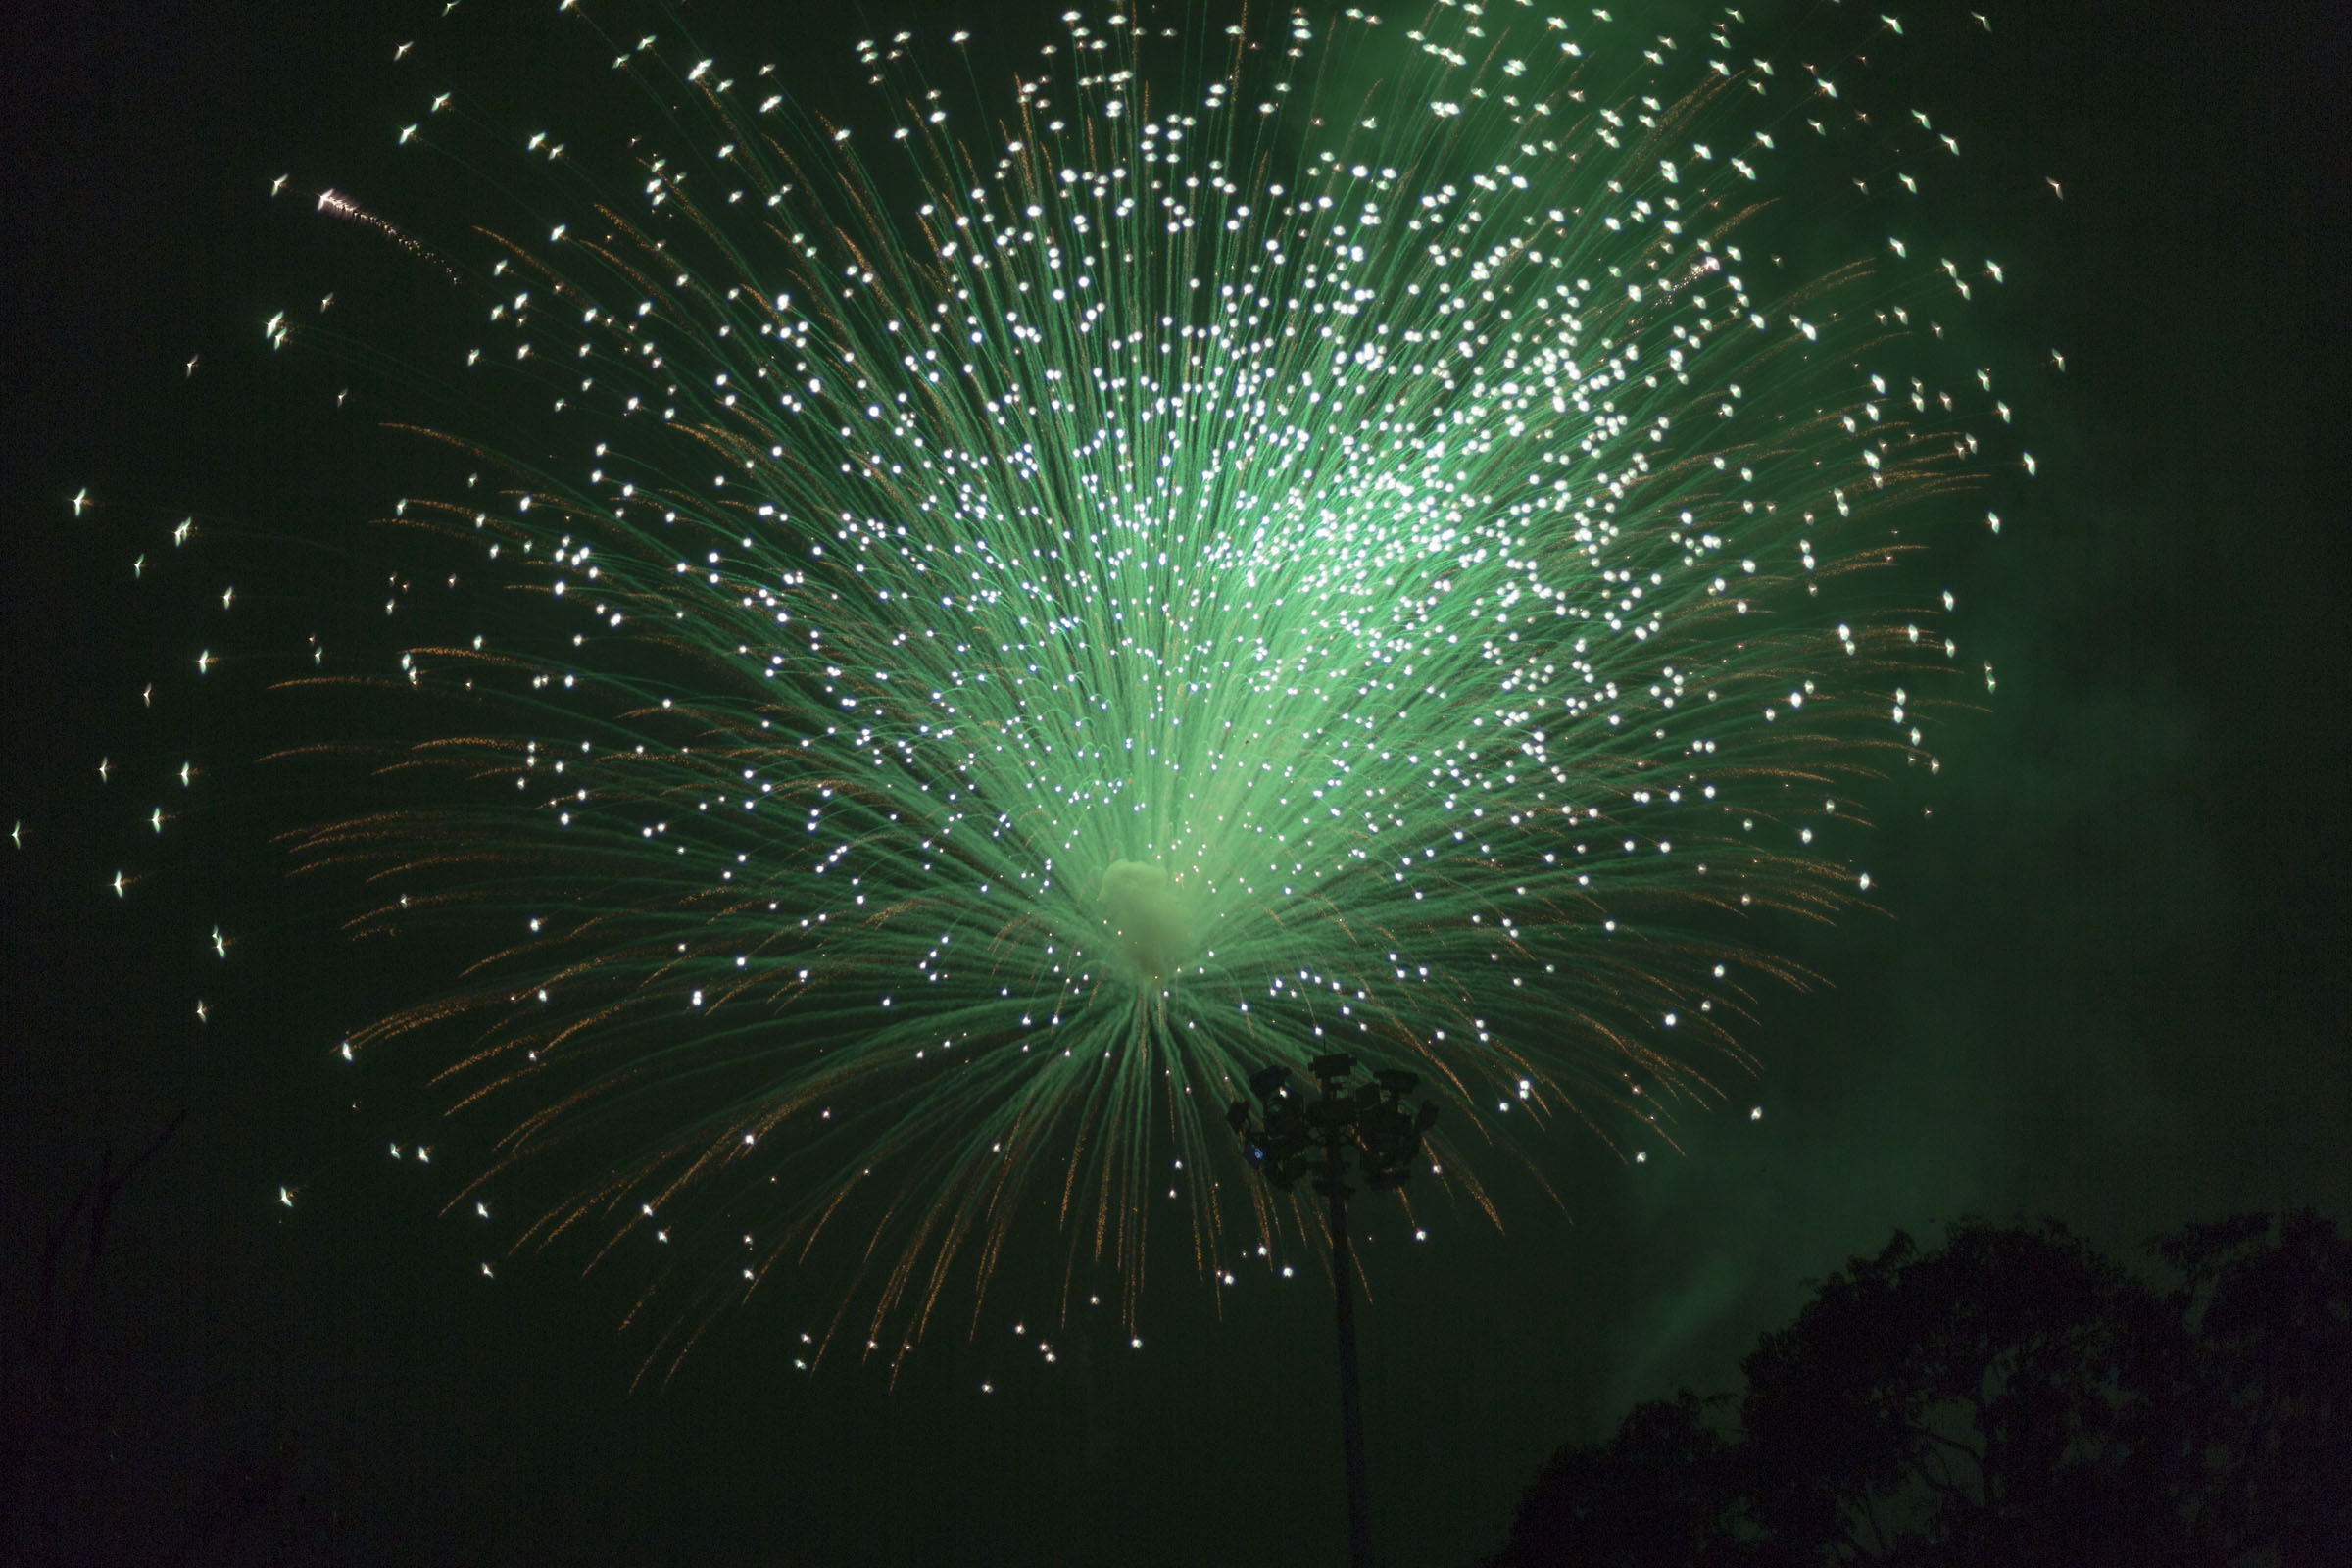 Thrissur Pooram - Fireworks